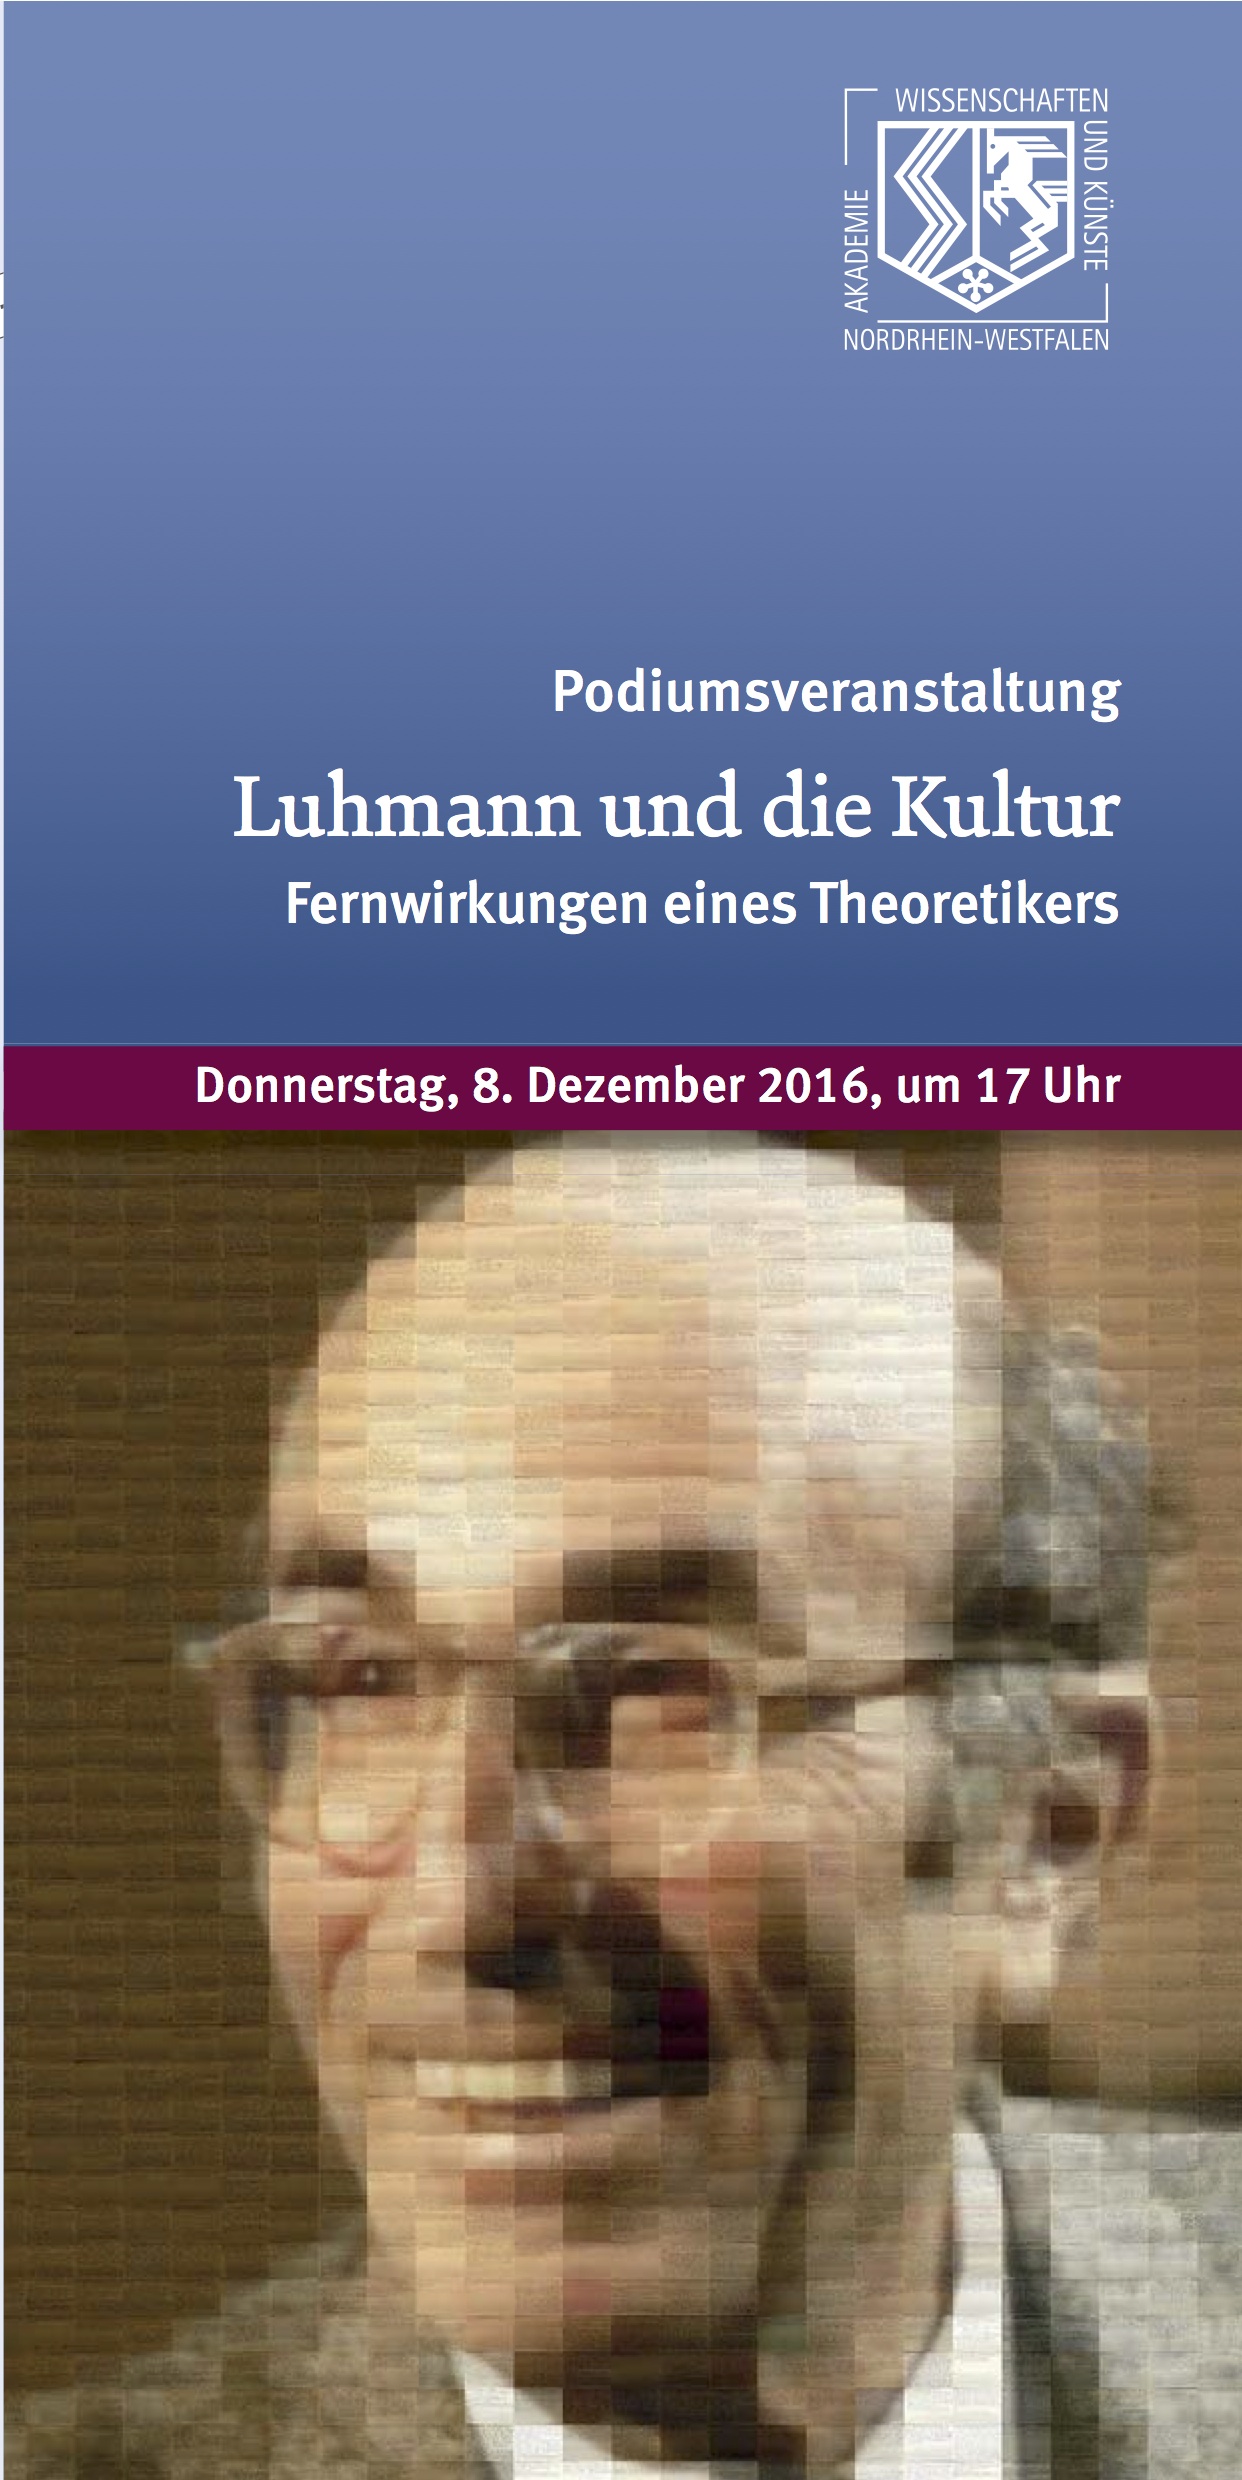 Luhmann und die Kultur. Fernwirkungen eines Theoretikers, Bild: Podiumsveranstaltung, AWK Düsseldorf, 8.12.2016.